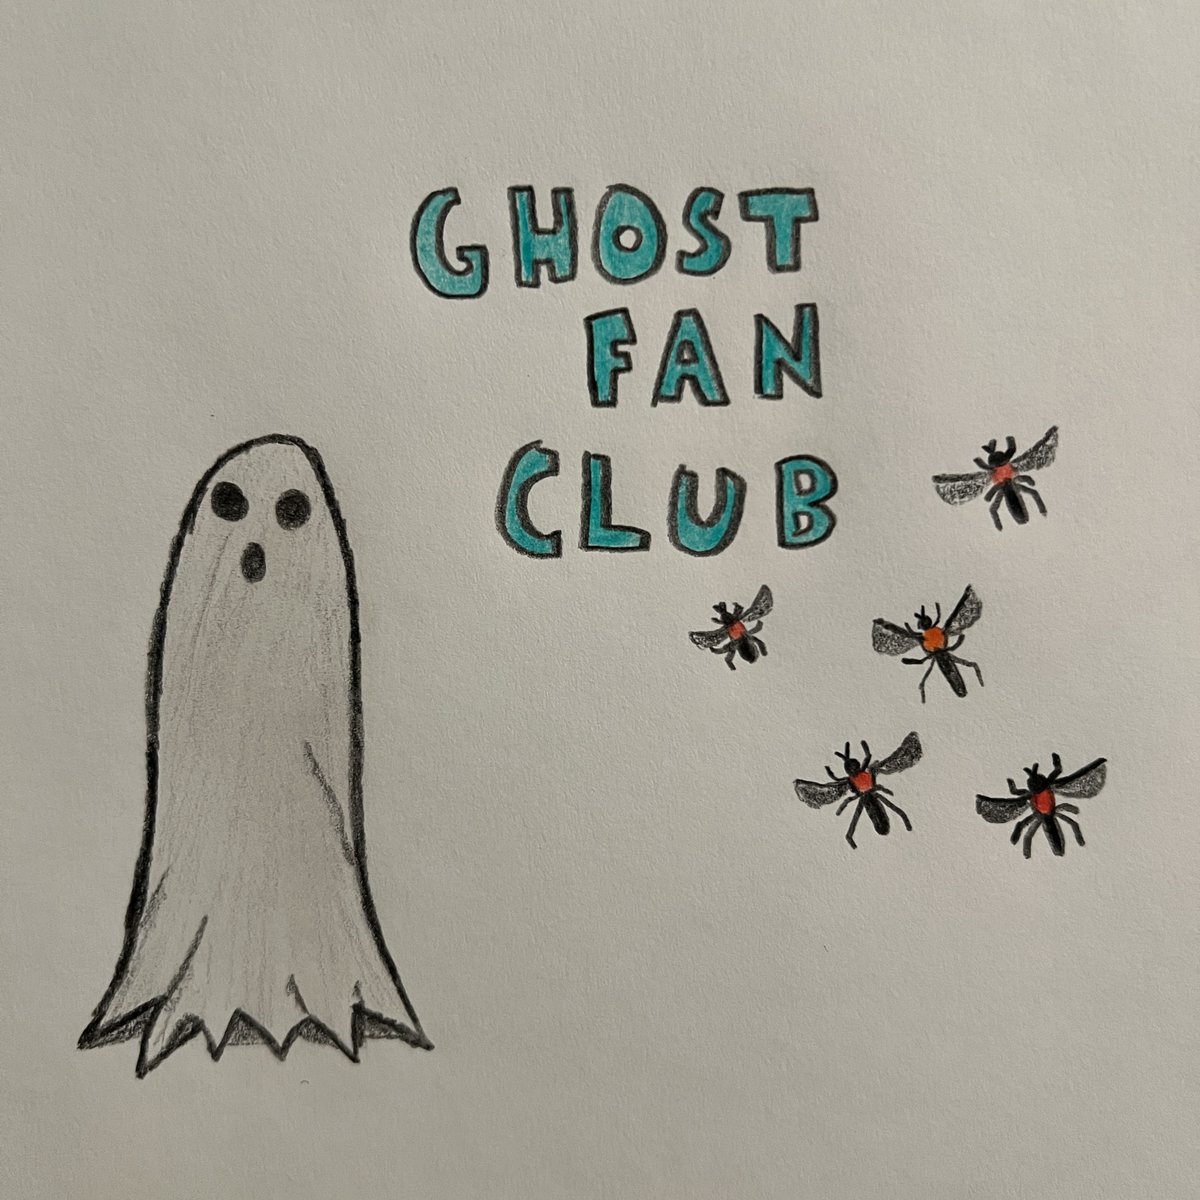 Ghost Fan Club – Out Of The Turmoil #KnifepunchRecords #release #MountEerie #newmusic #TylerCostolo #Music #NewRelease #GhostFanClub #MusicNews #ghostfanclub 1st3-magazine.com/ghost-fan-club…